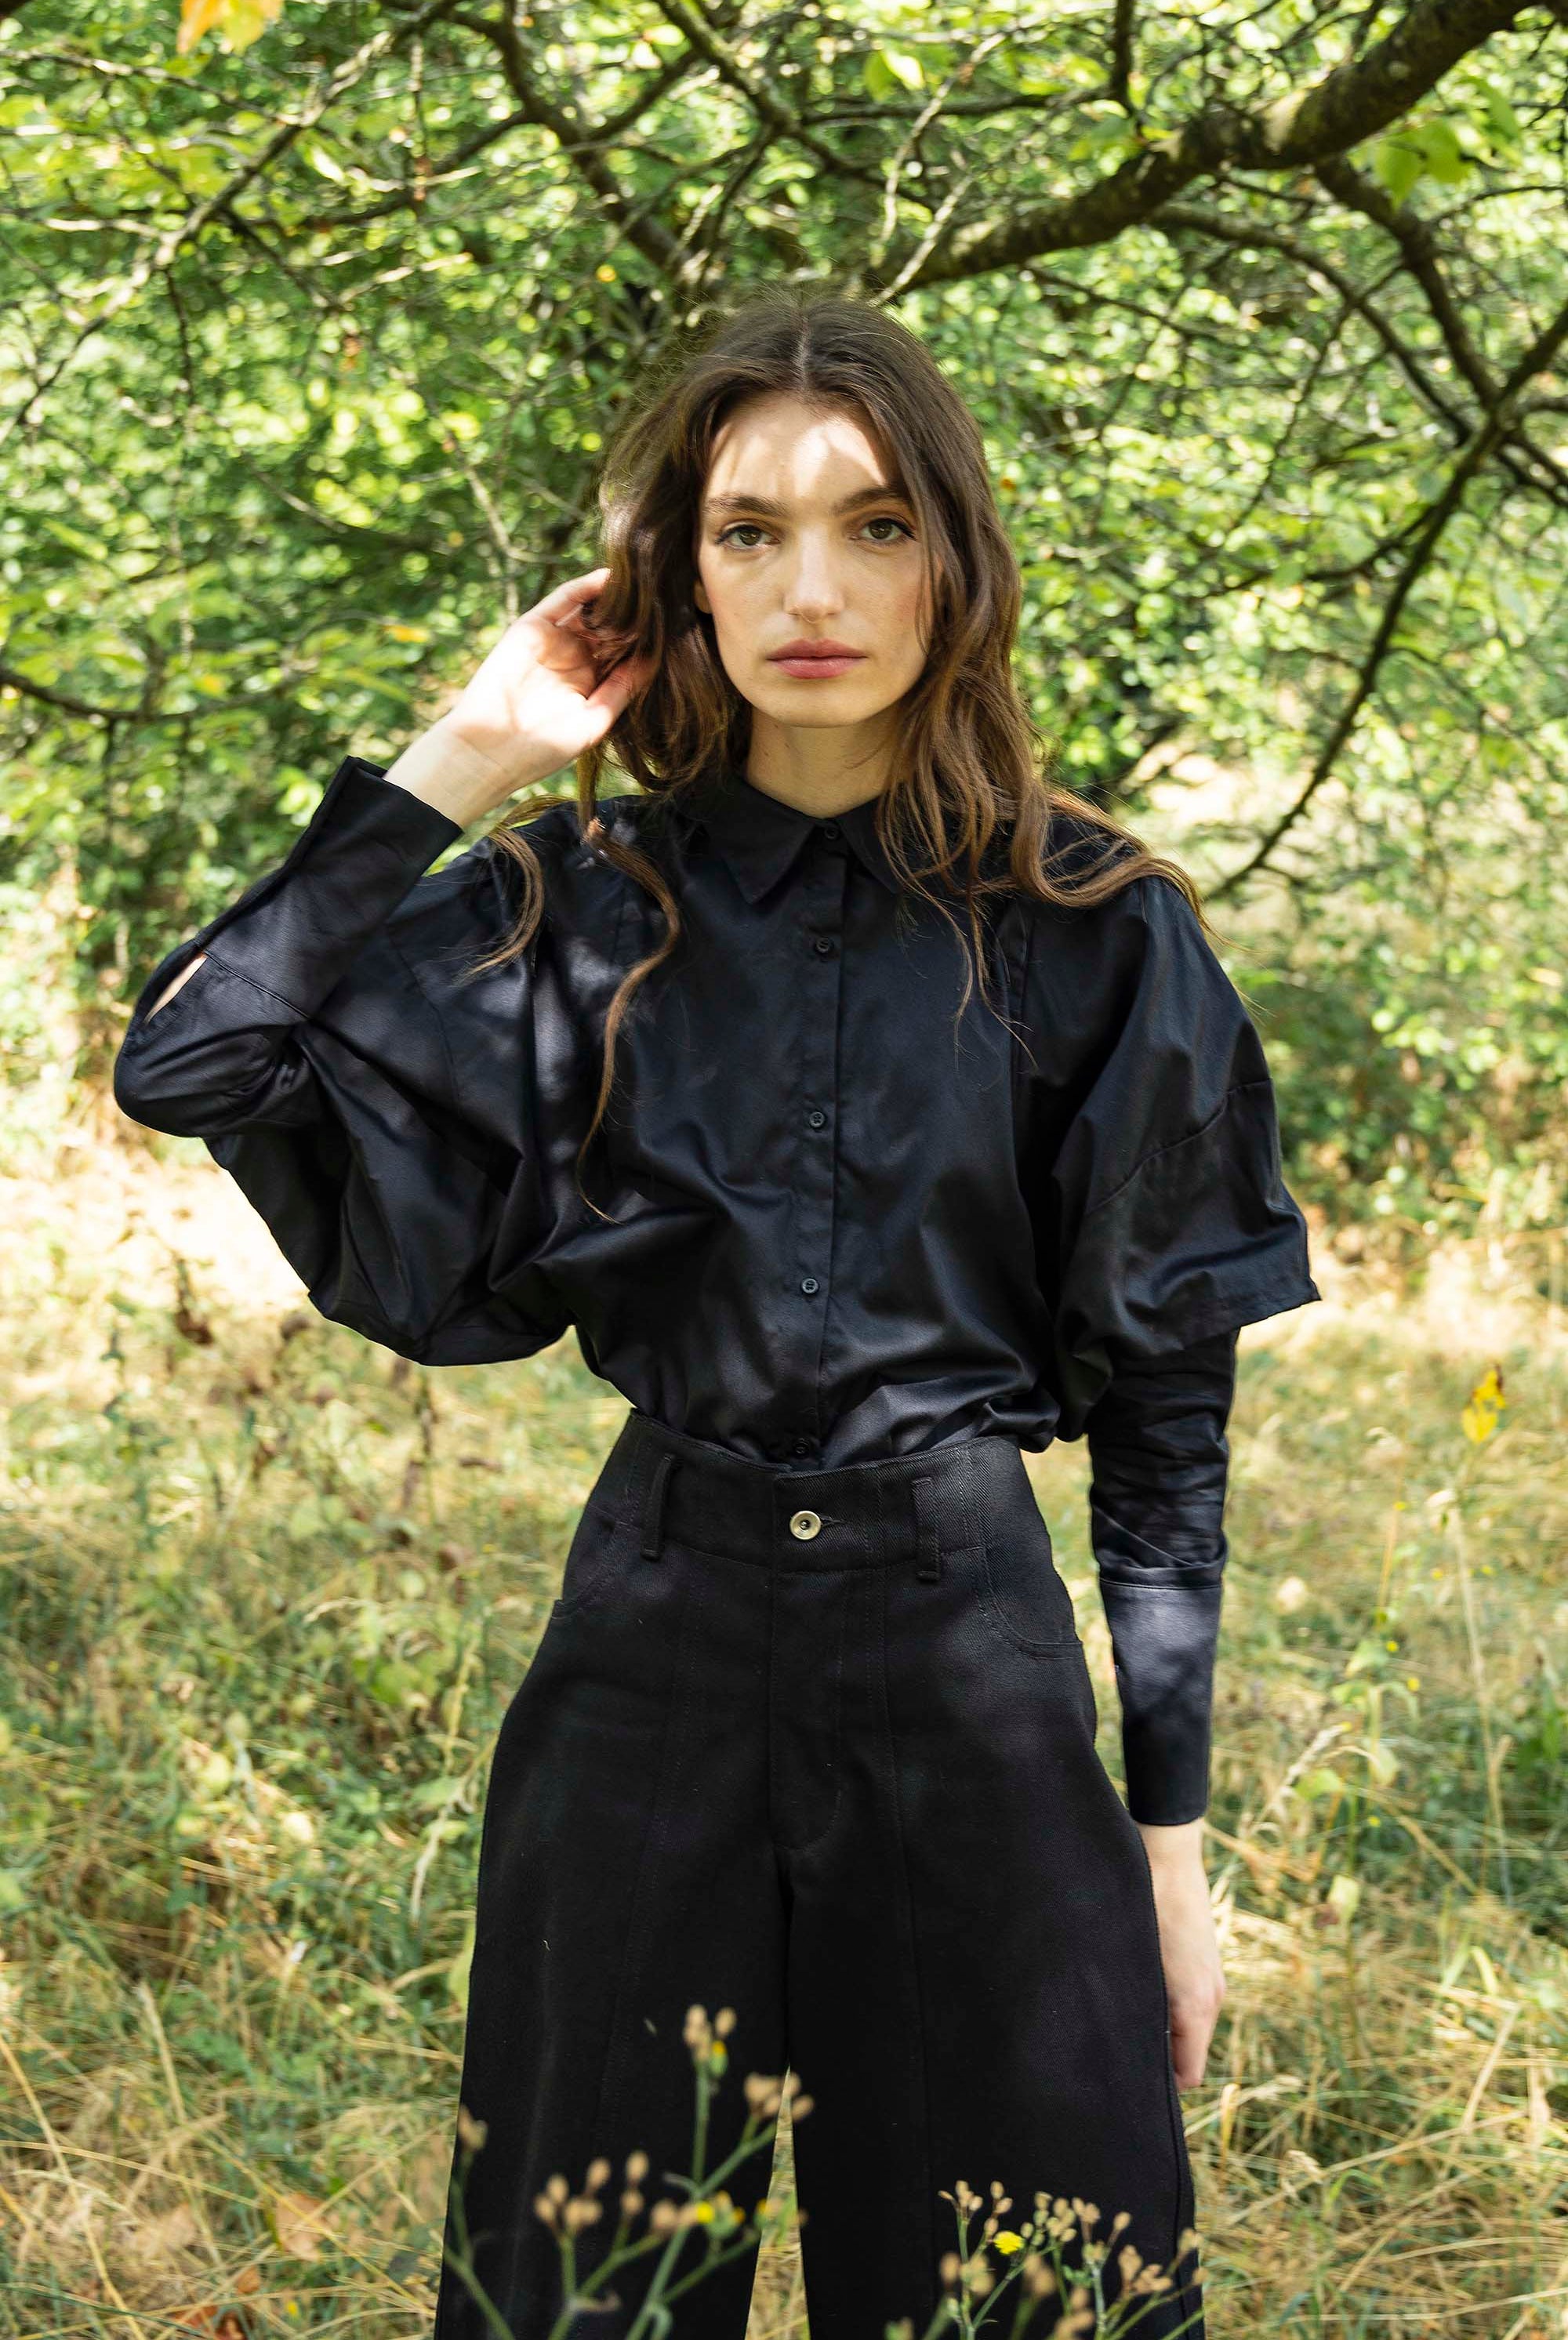 Chemise Laria Noir classique intemporelle, la chemise dessine la silhouette